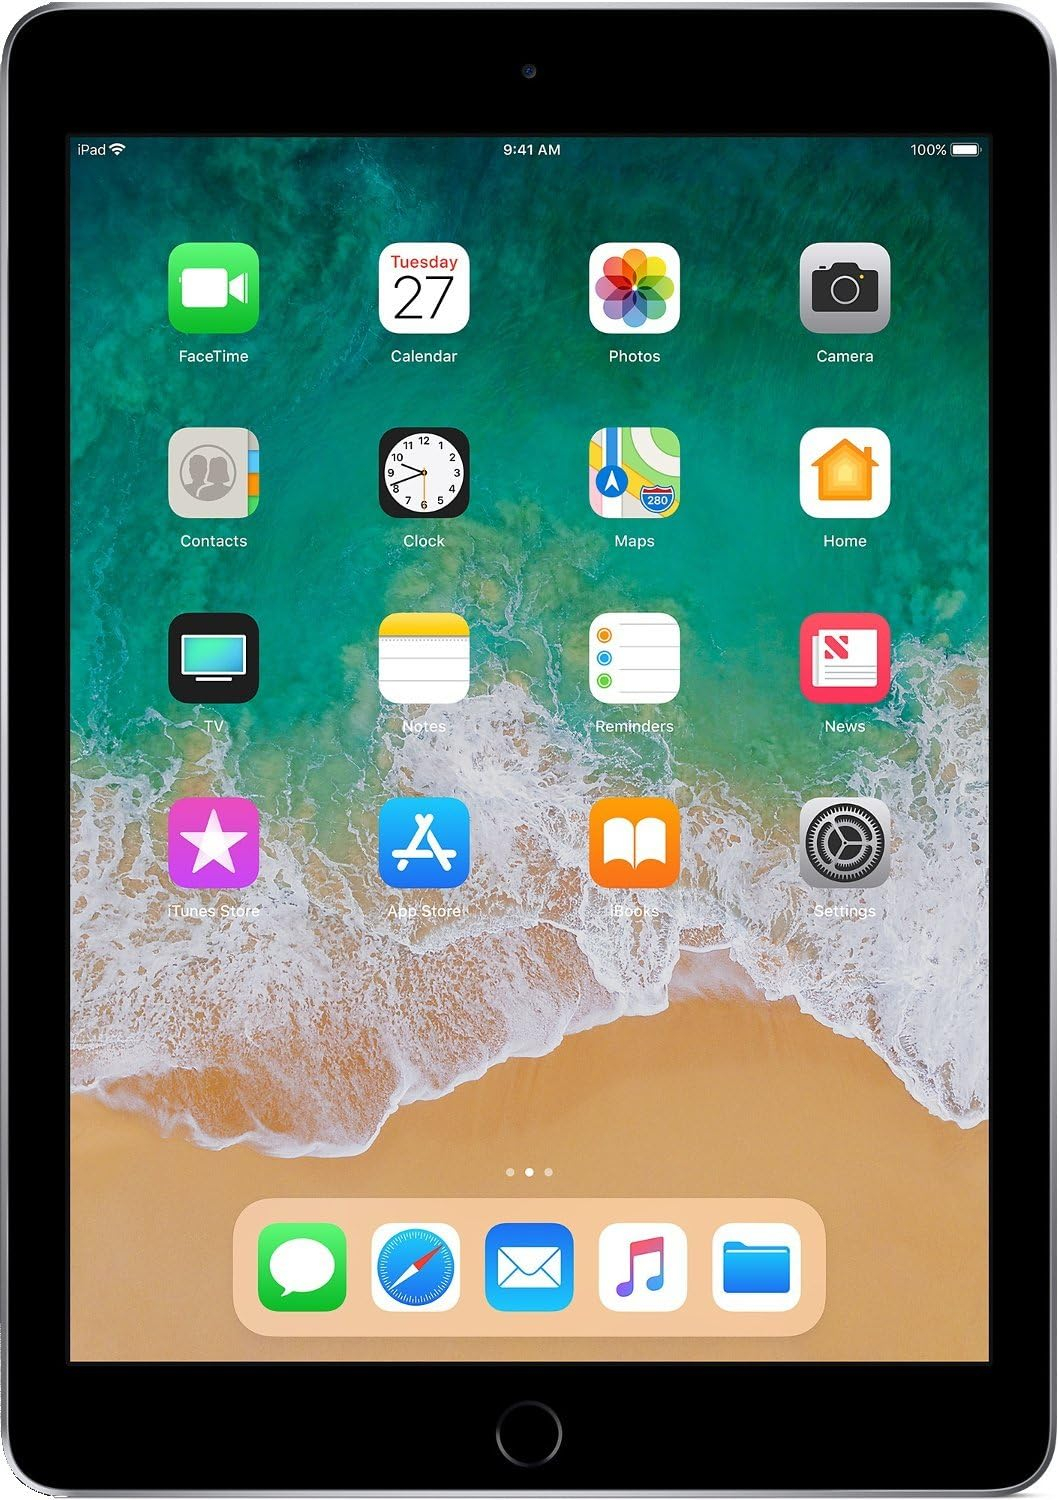 2018 Apple iPad 6th Gen (9.7- inch, Wi-Fi, 128GB)- Space gray (Renewed)